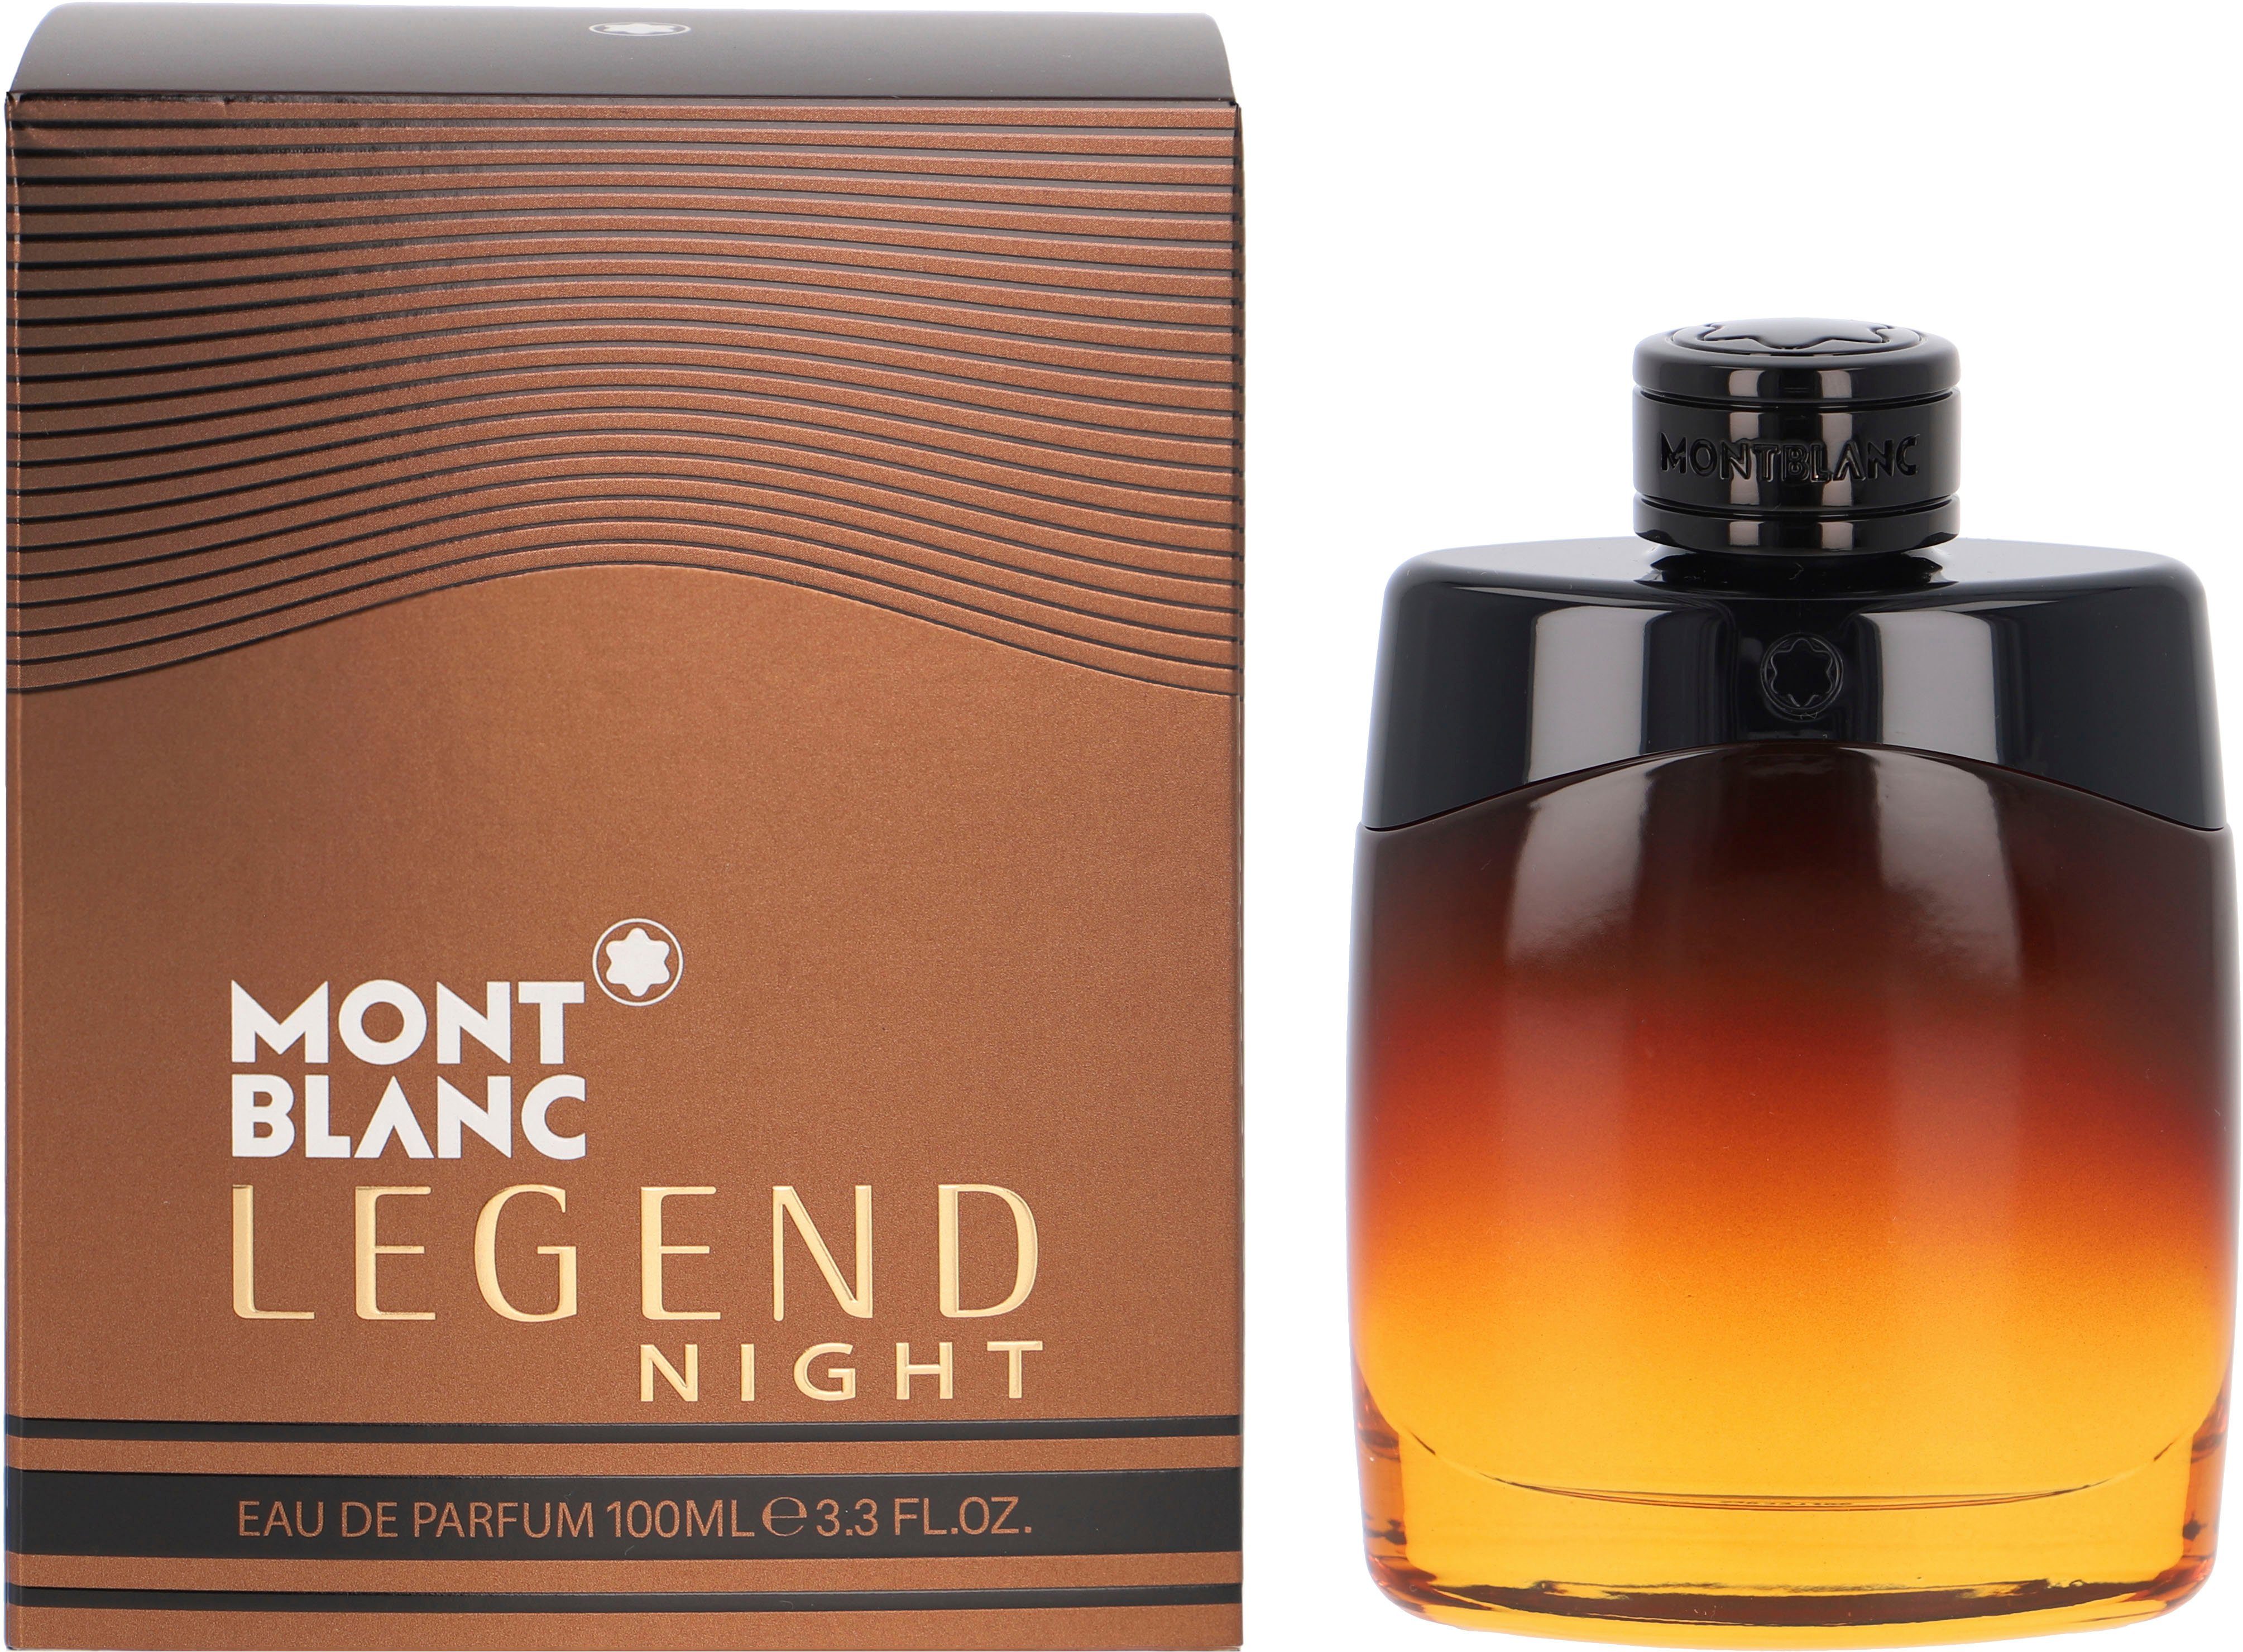 MONTBLANC Eau Parfum de Legend Night